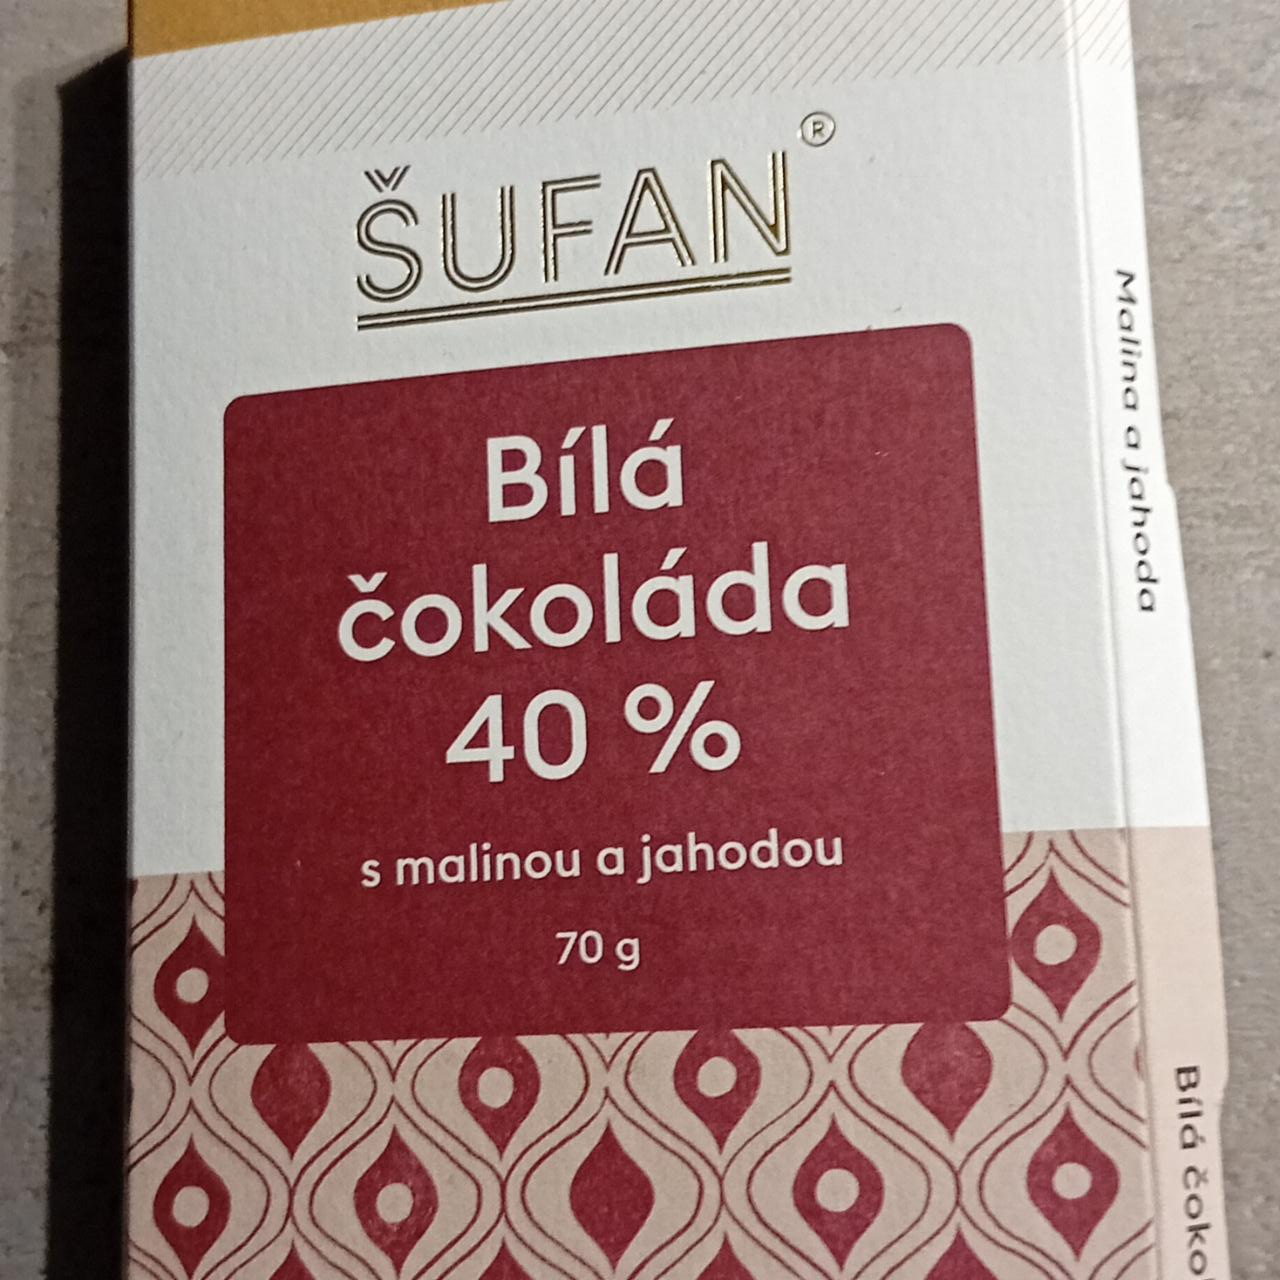 Fotografie - Bílá čokoláda 40% s malinou a jahodou Šufan